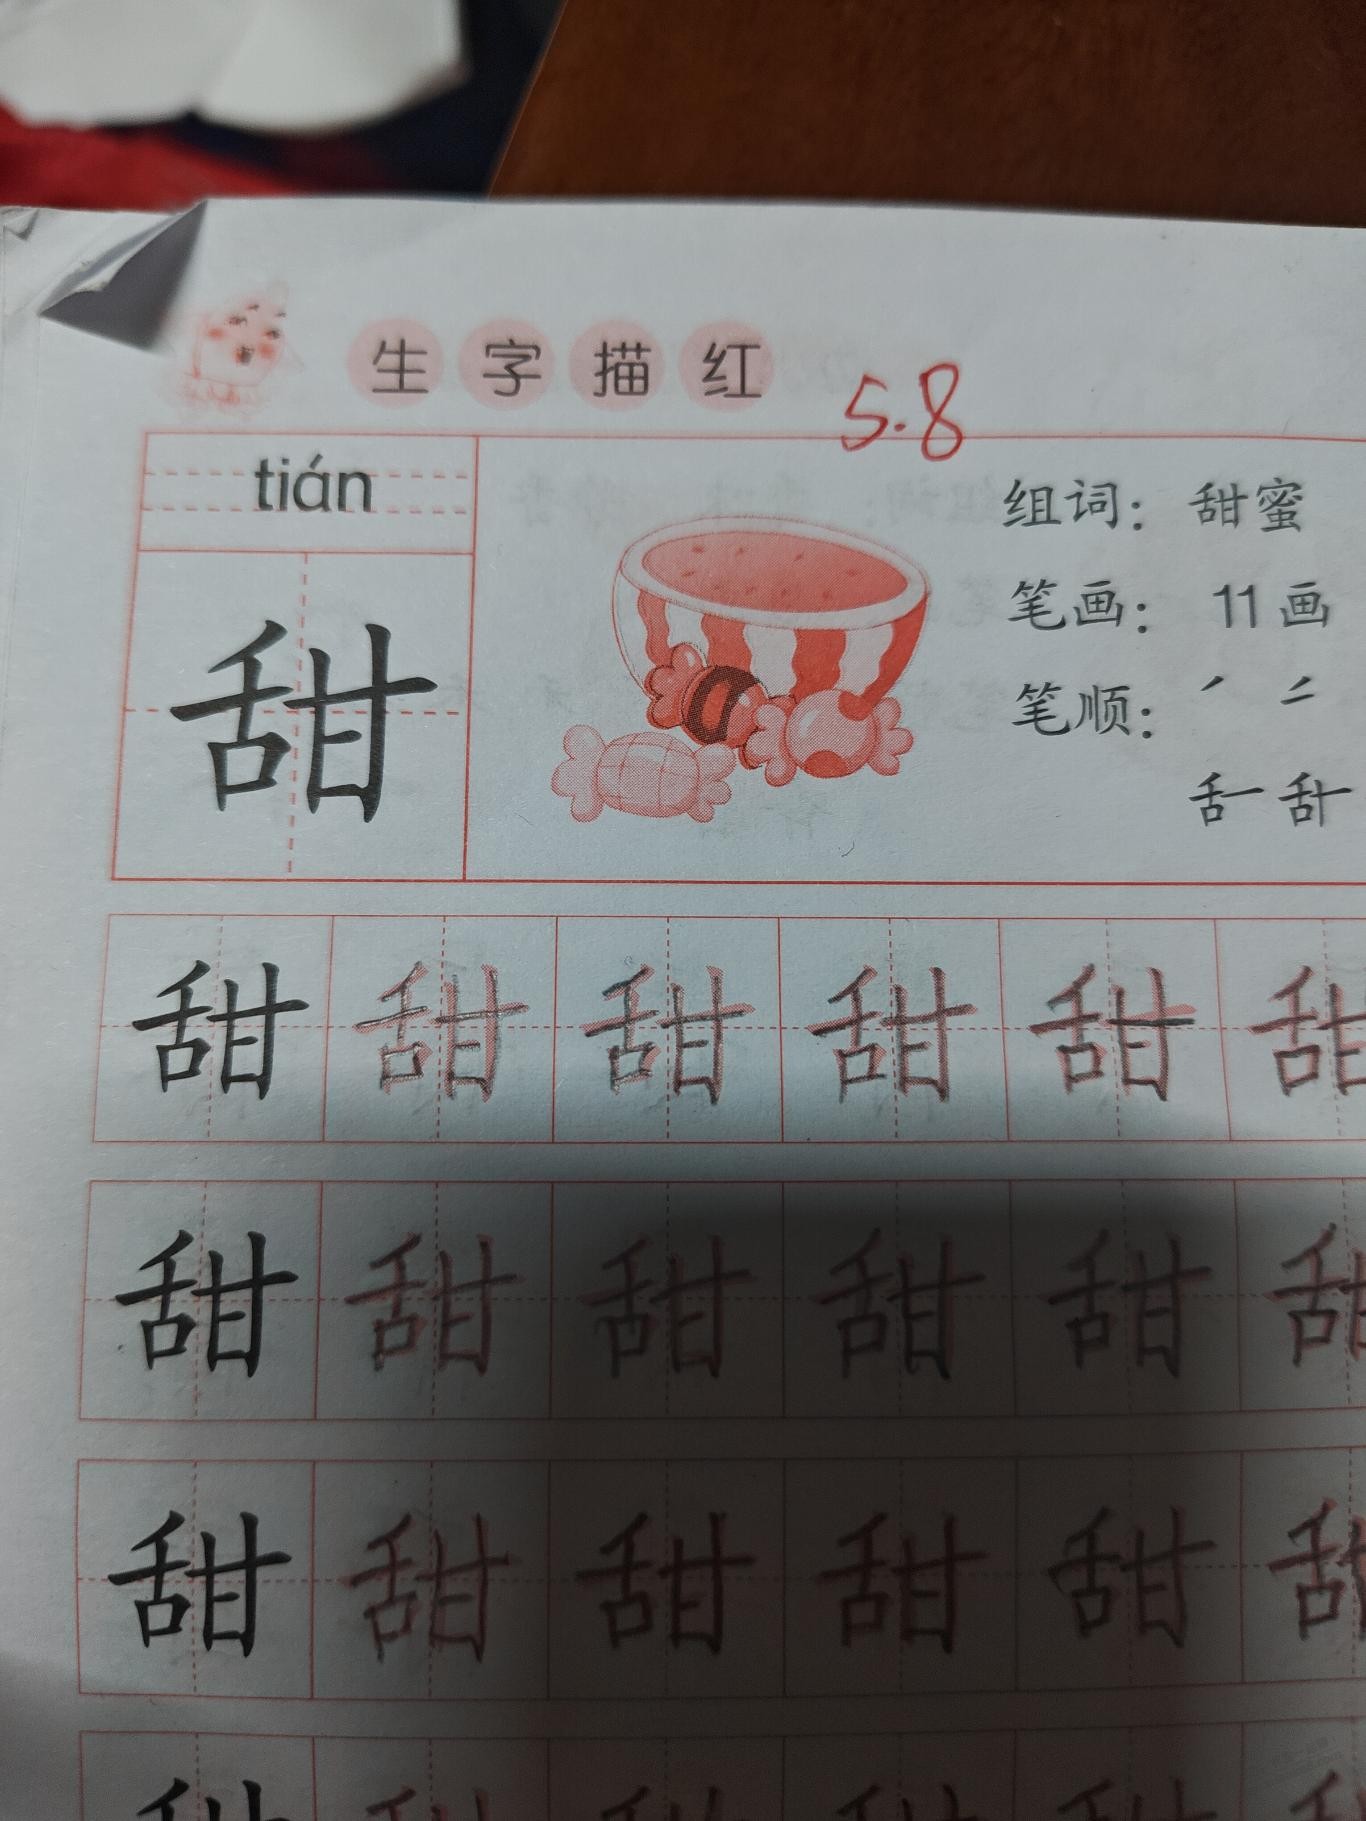 吐槽一下，现在的幼儿园书本，汉字用的字体，连我看着都蒙了，孩子一直问怎么写 - 线报酷